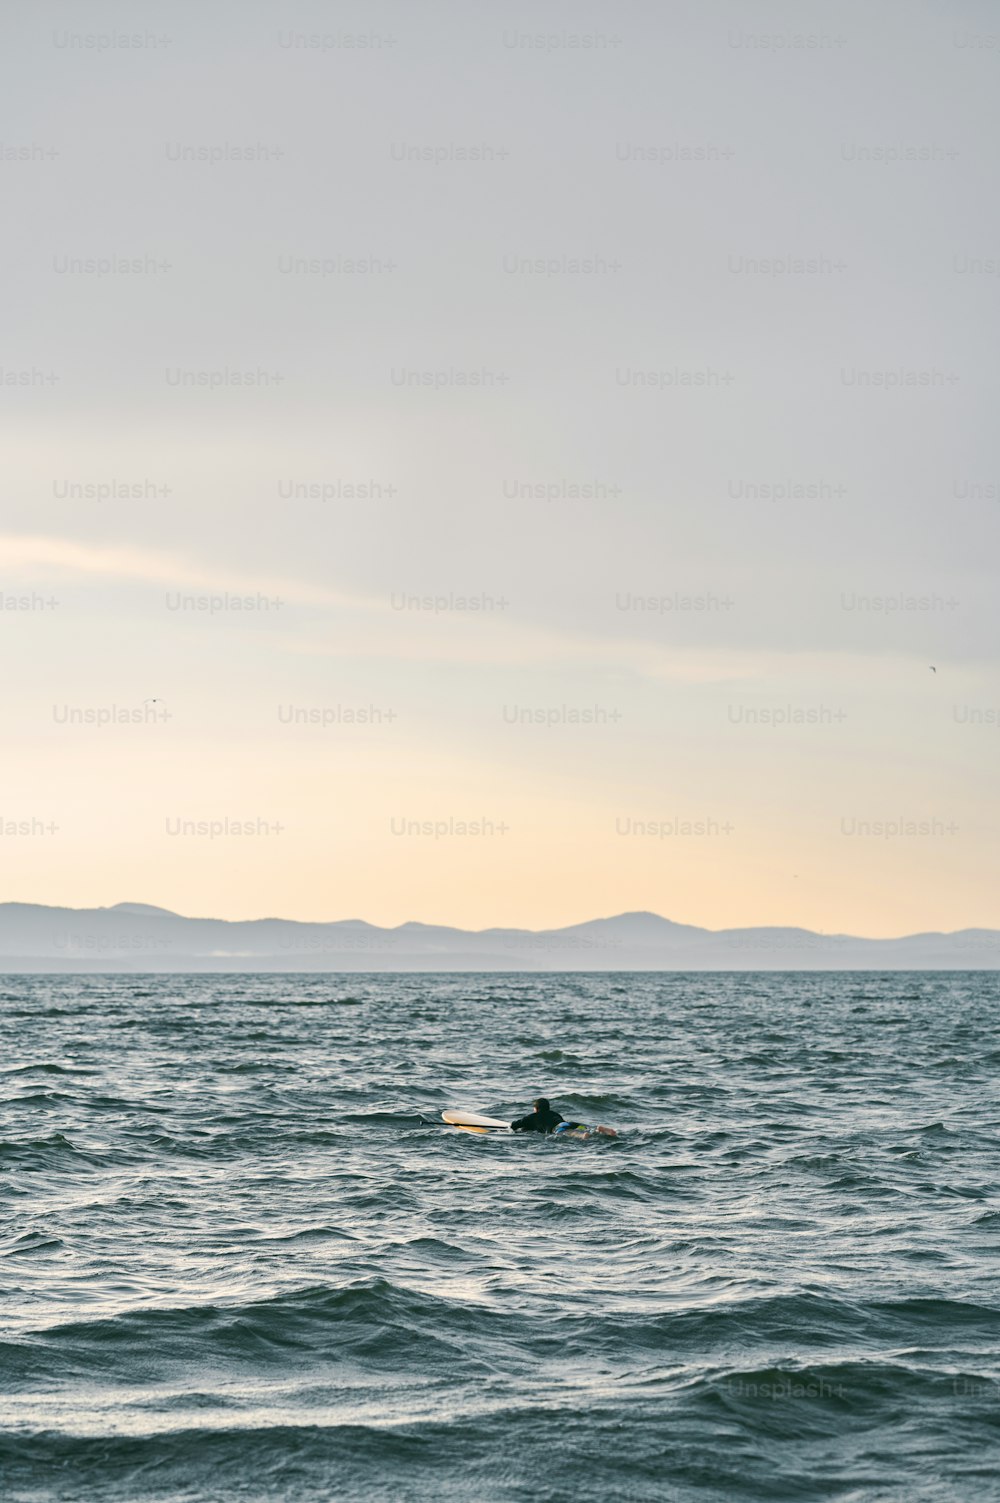 野生の自然を背景にサーフボードを漕ぐ男の小さな姿 ウンテイン湖、風光明媚な景色、夕日